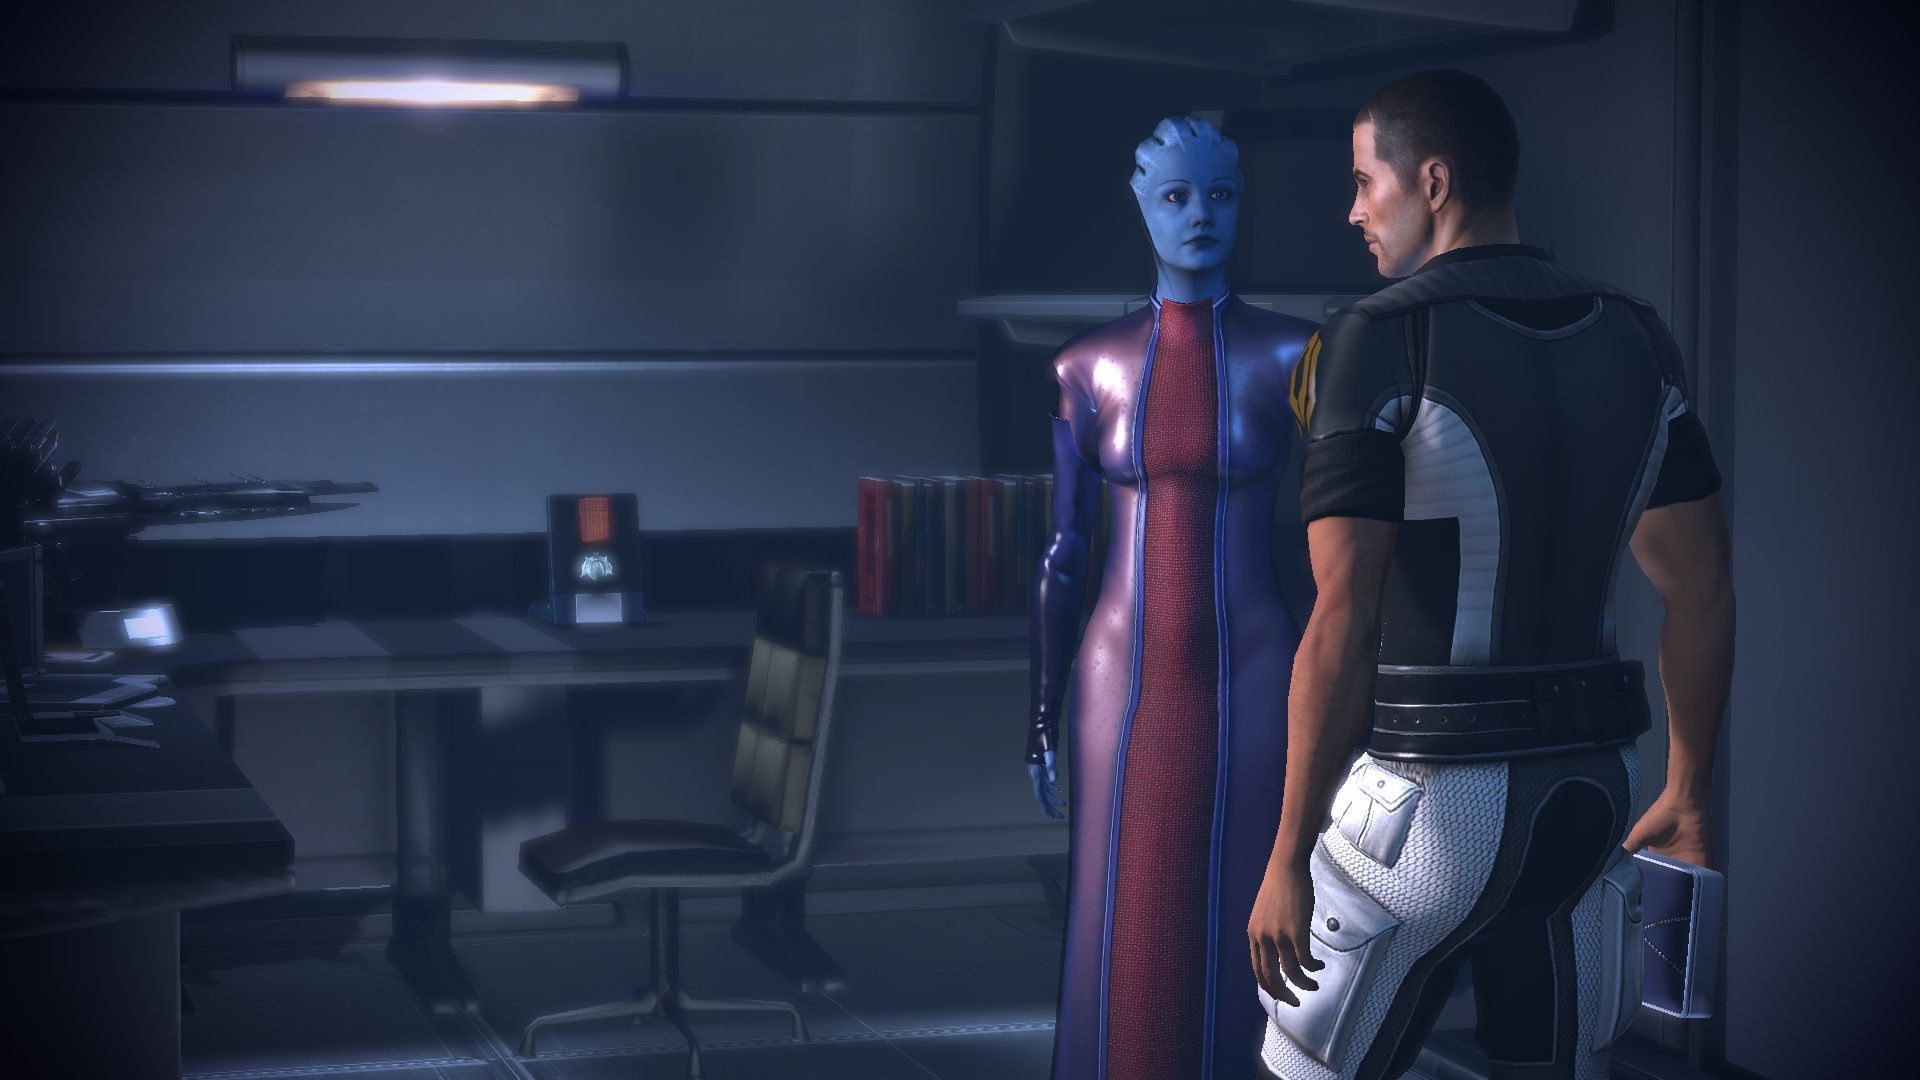 Mass Effect 2, Lair of the Shadow Broker, Screenshots, Windows, 1920x1080 Full HD Desktop